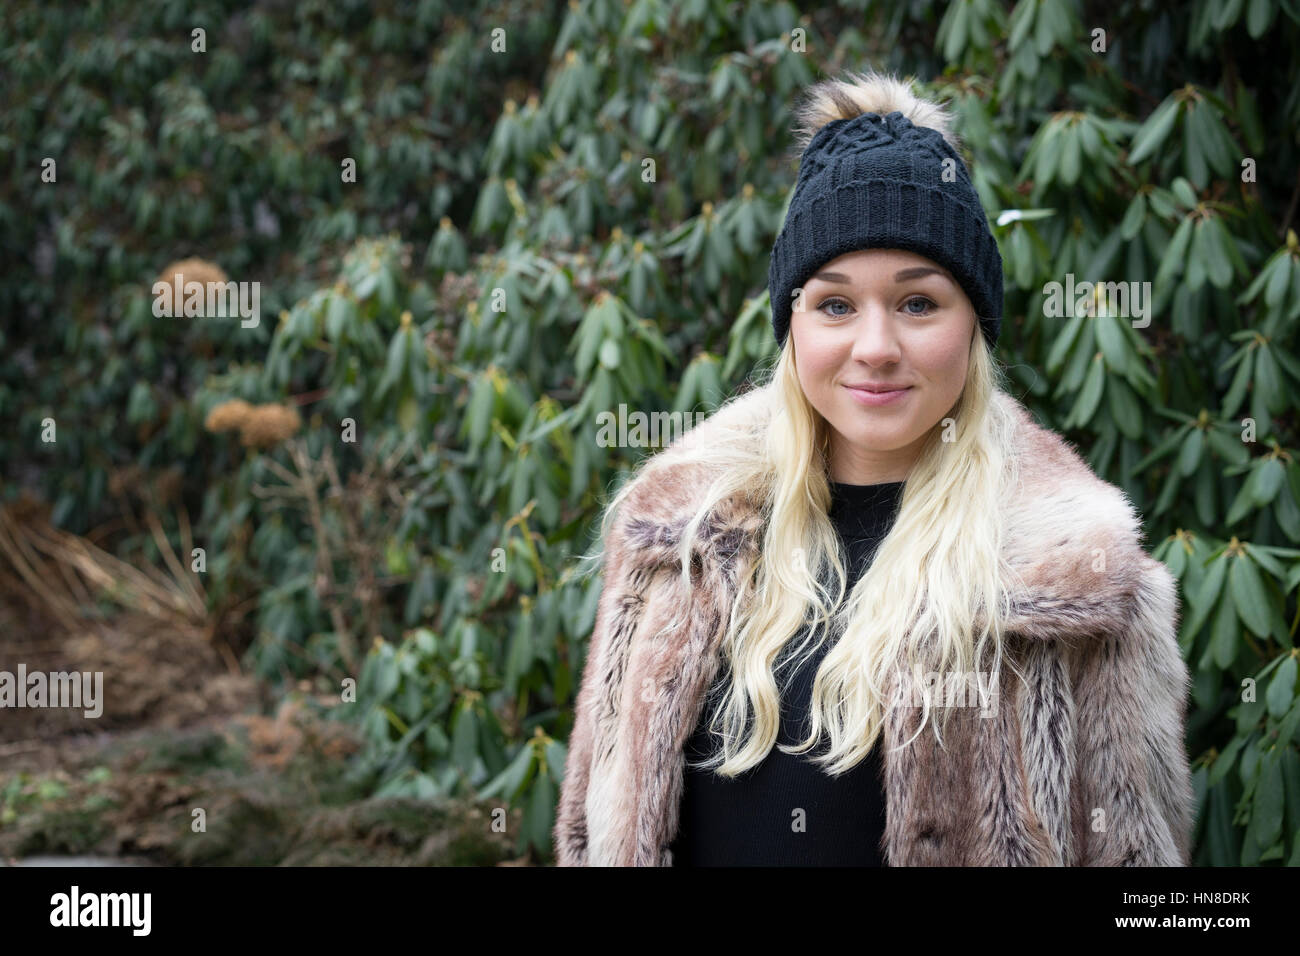 Schöne blonde kaukasische Mode Frau in GAP und einen Pelzmantel. Schwedische skandinavischer Herkunft. Winter- und outdoor im Stadtbild. Stockfoto